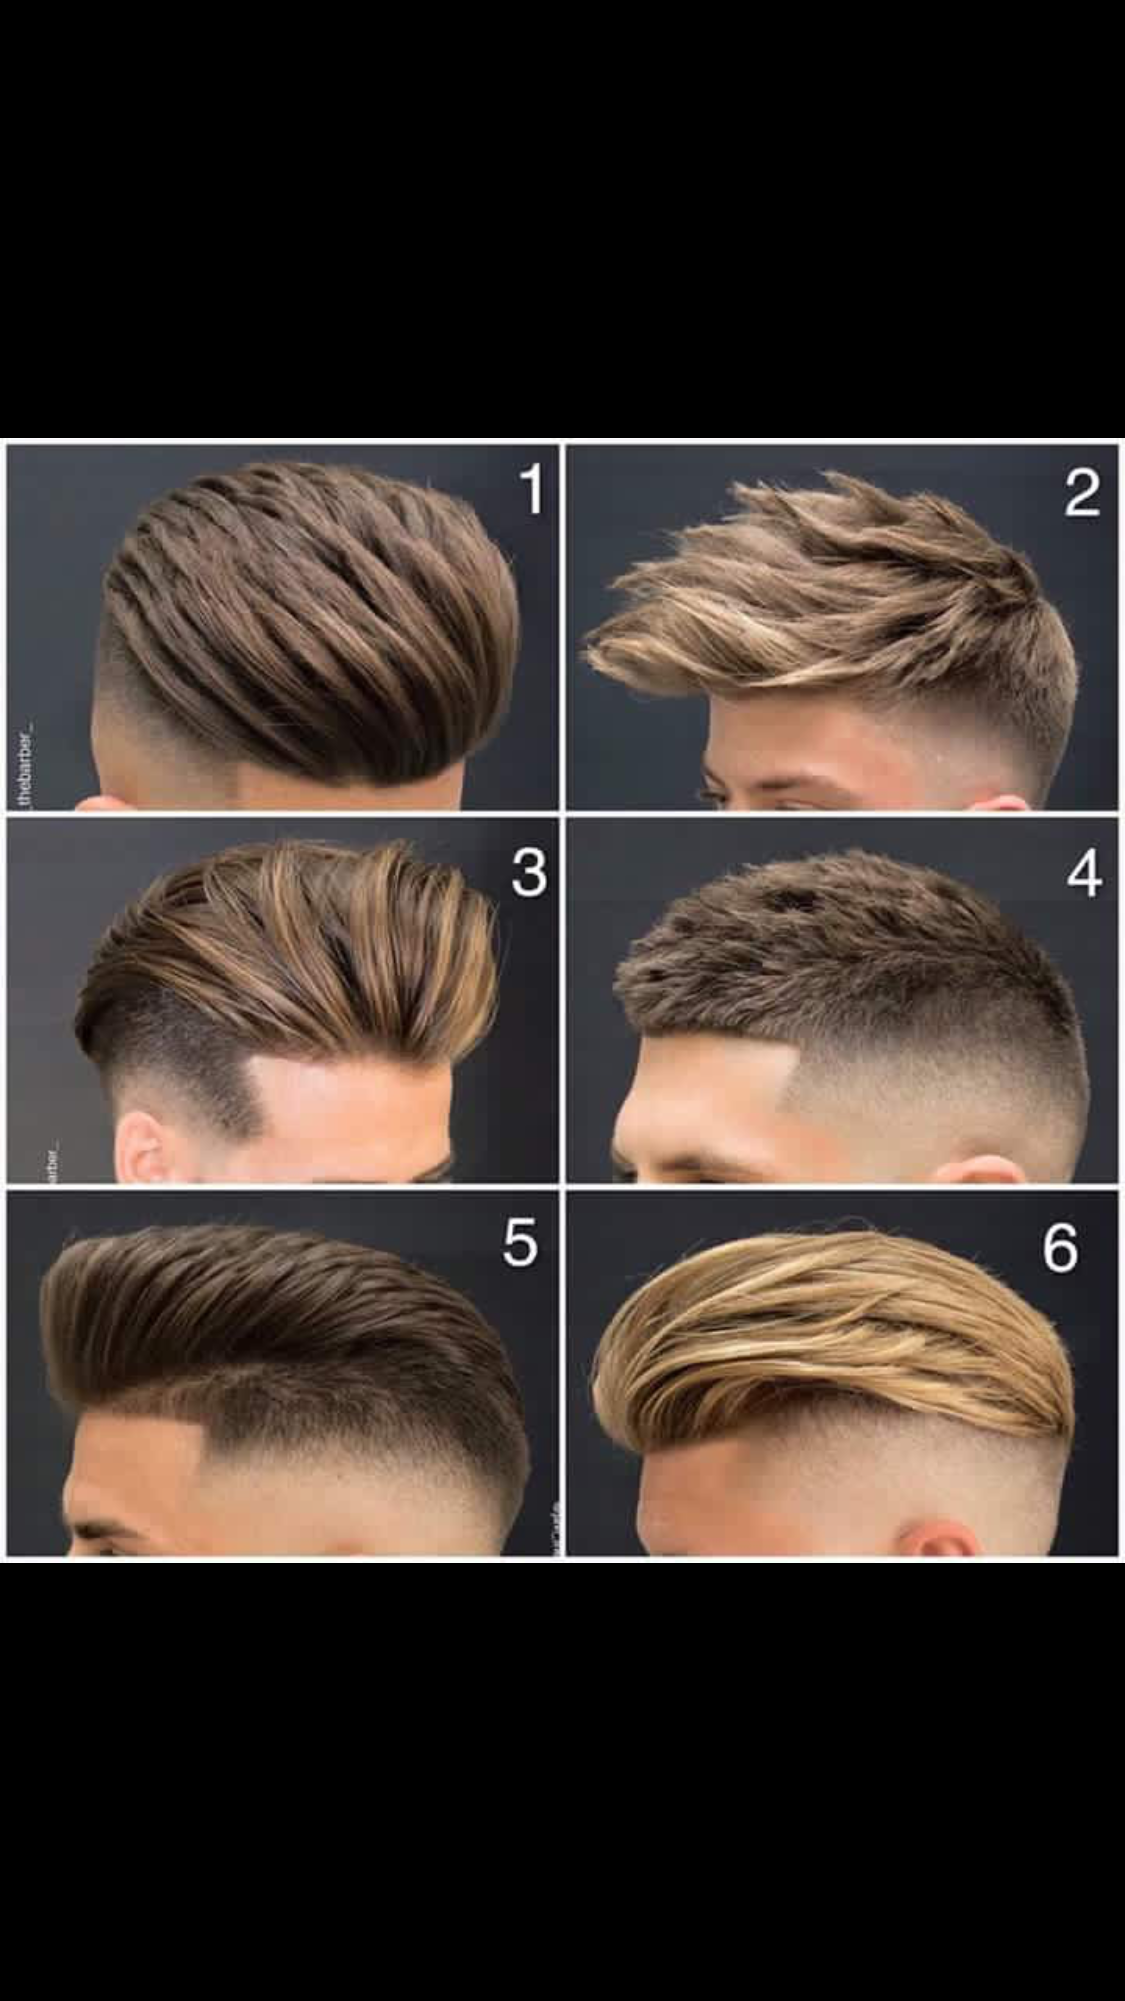 髮型作品参考:Men hair